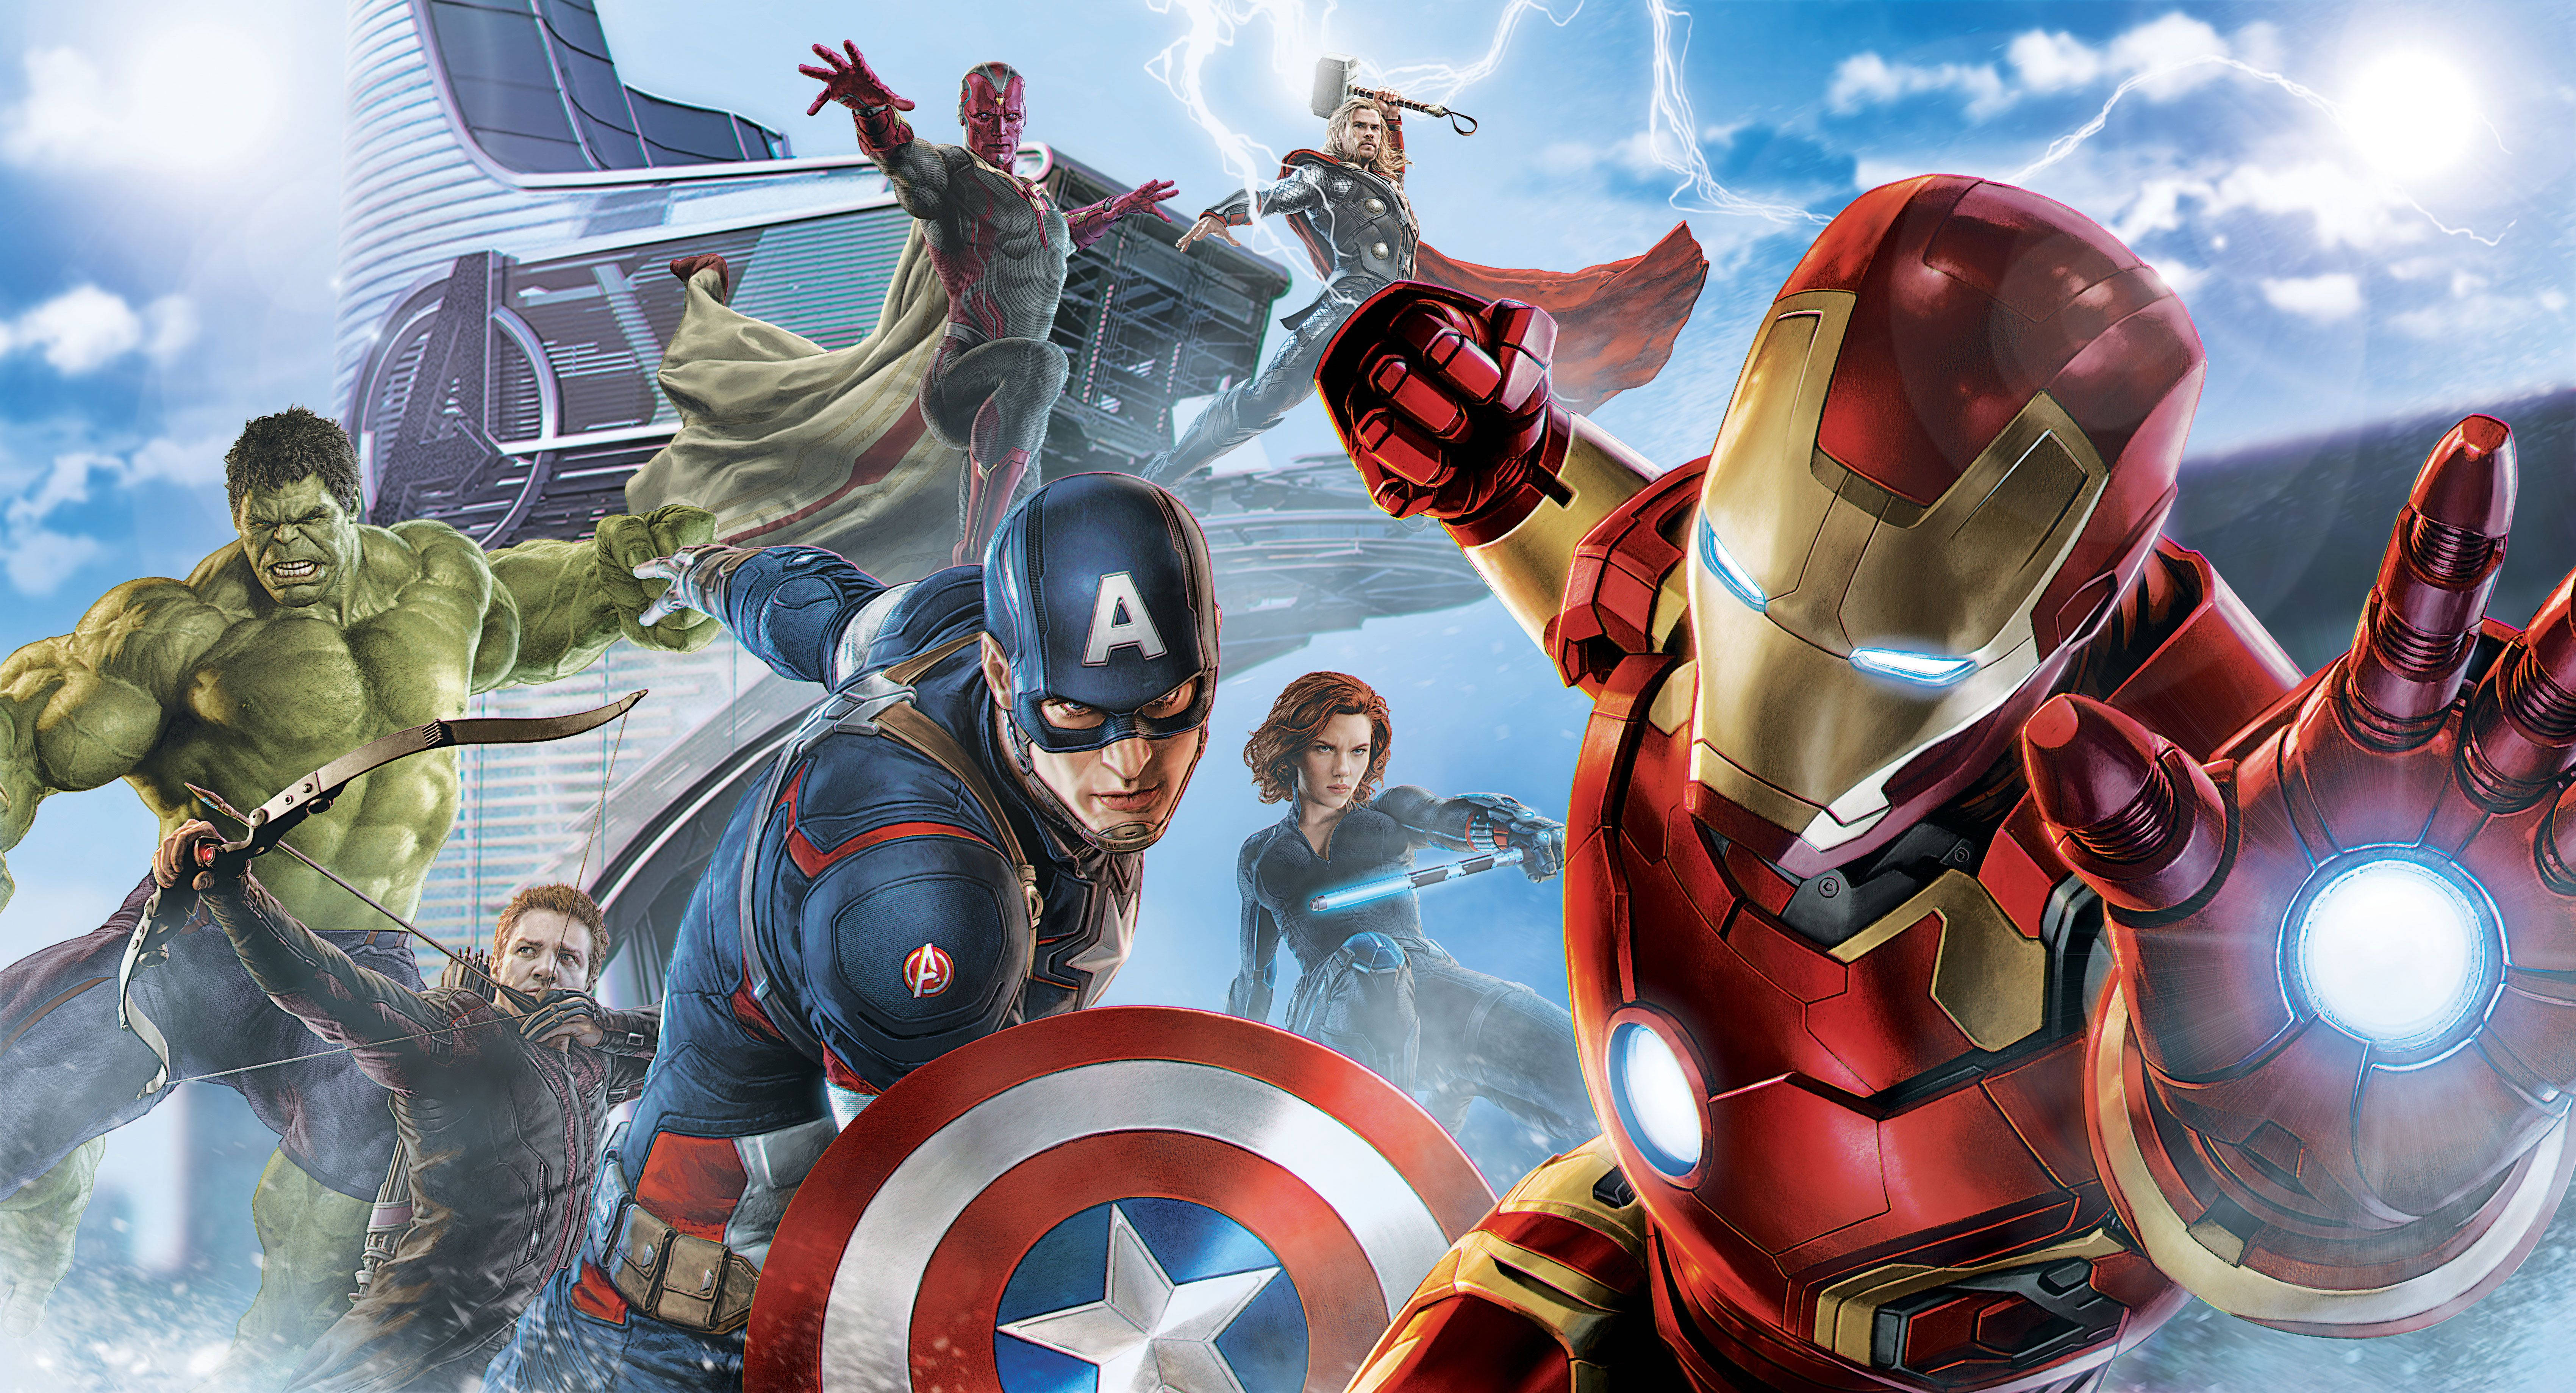 42+] Avengers HD Wallpapers 1080p - WallpaperSafari